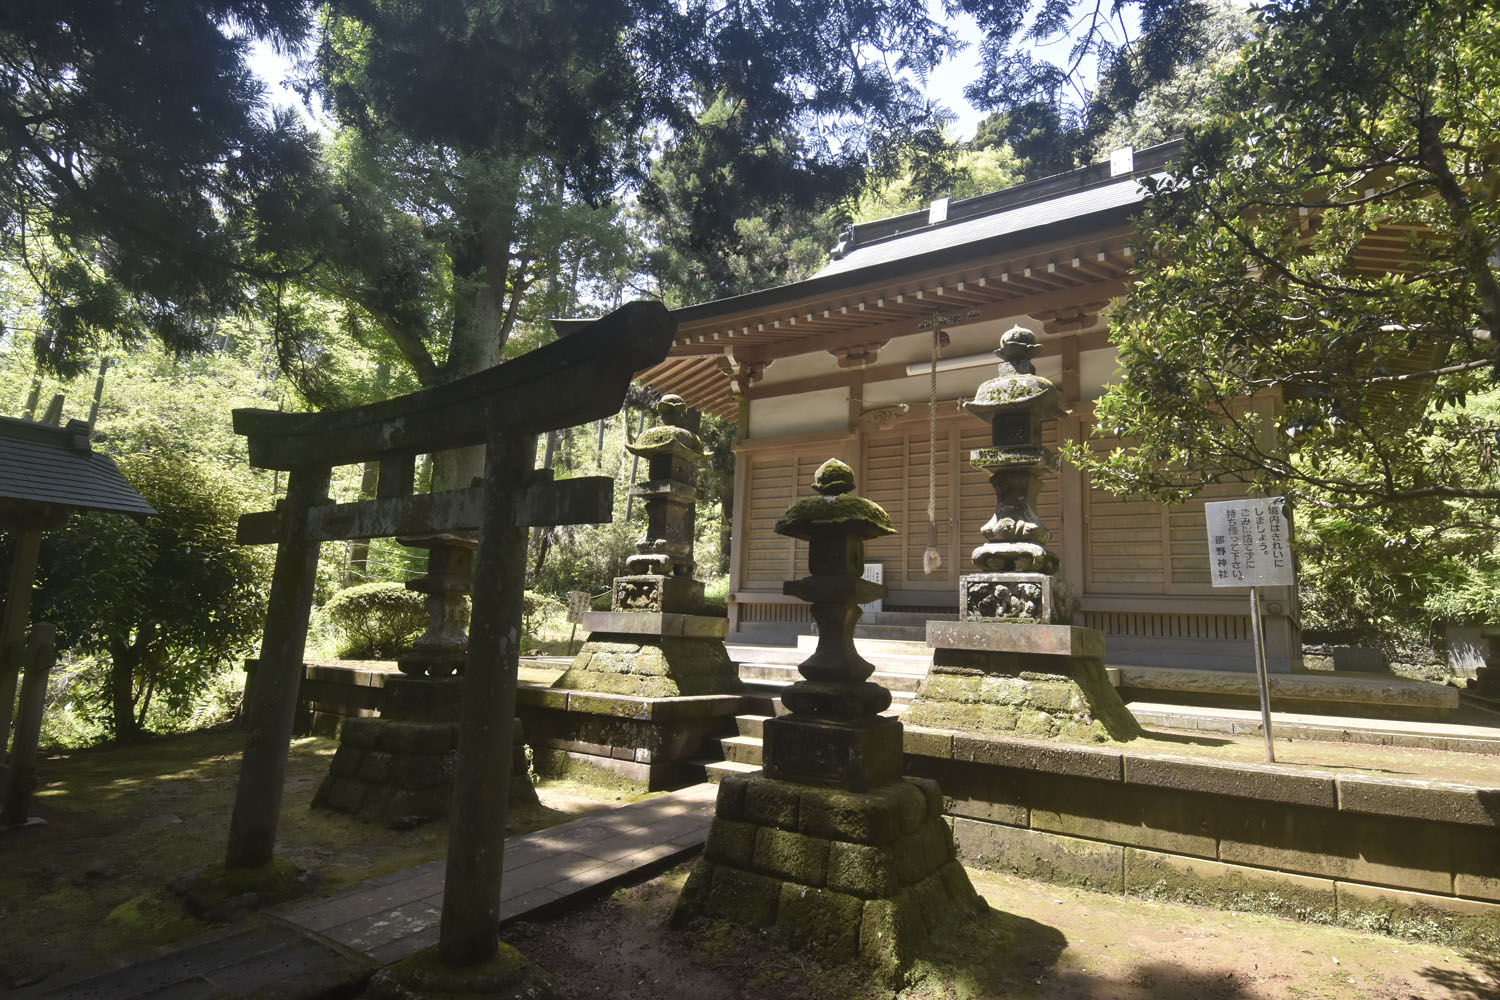 鎌倉の鬼門を守り続ける熊野神社。